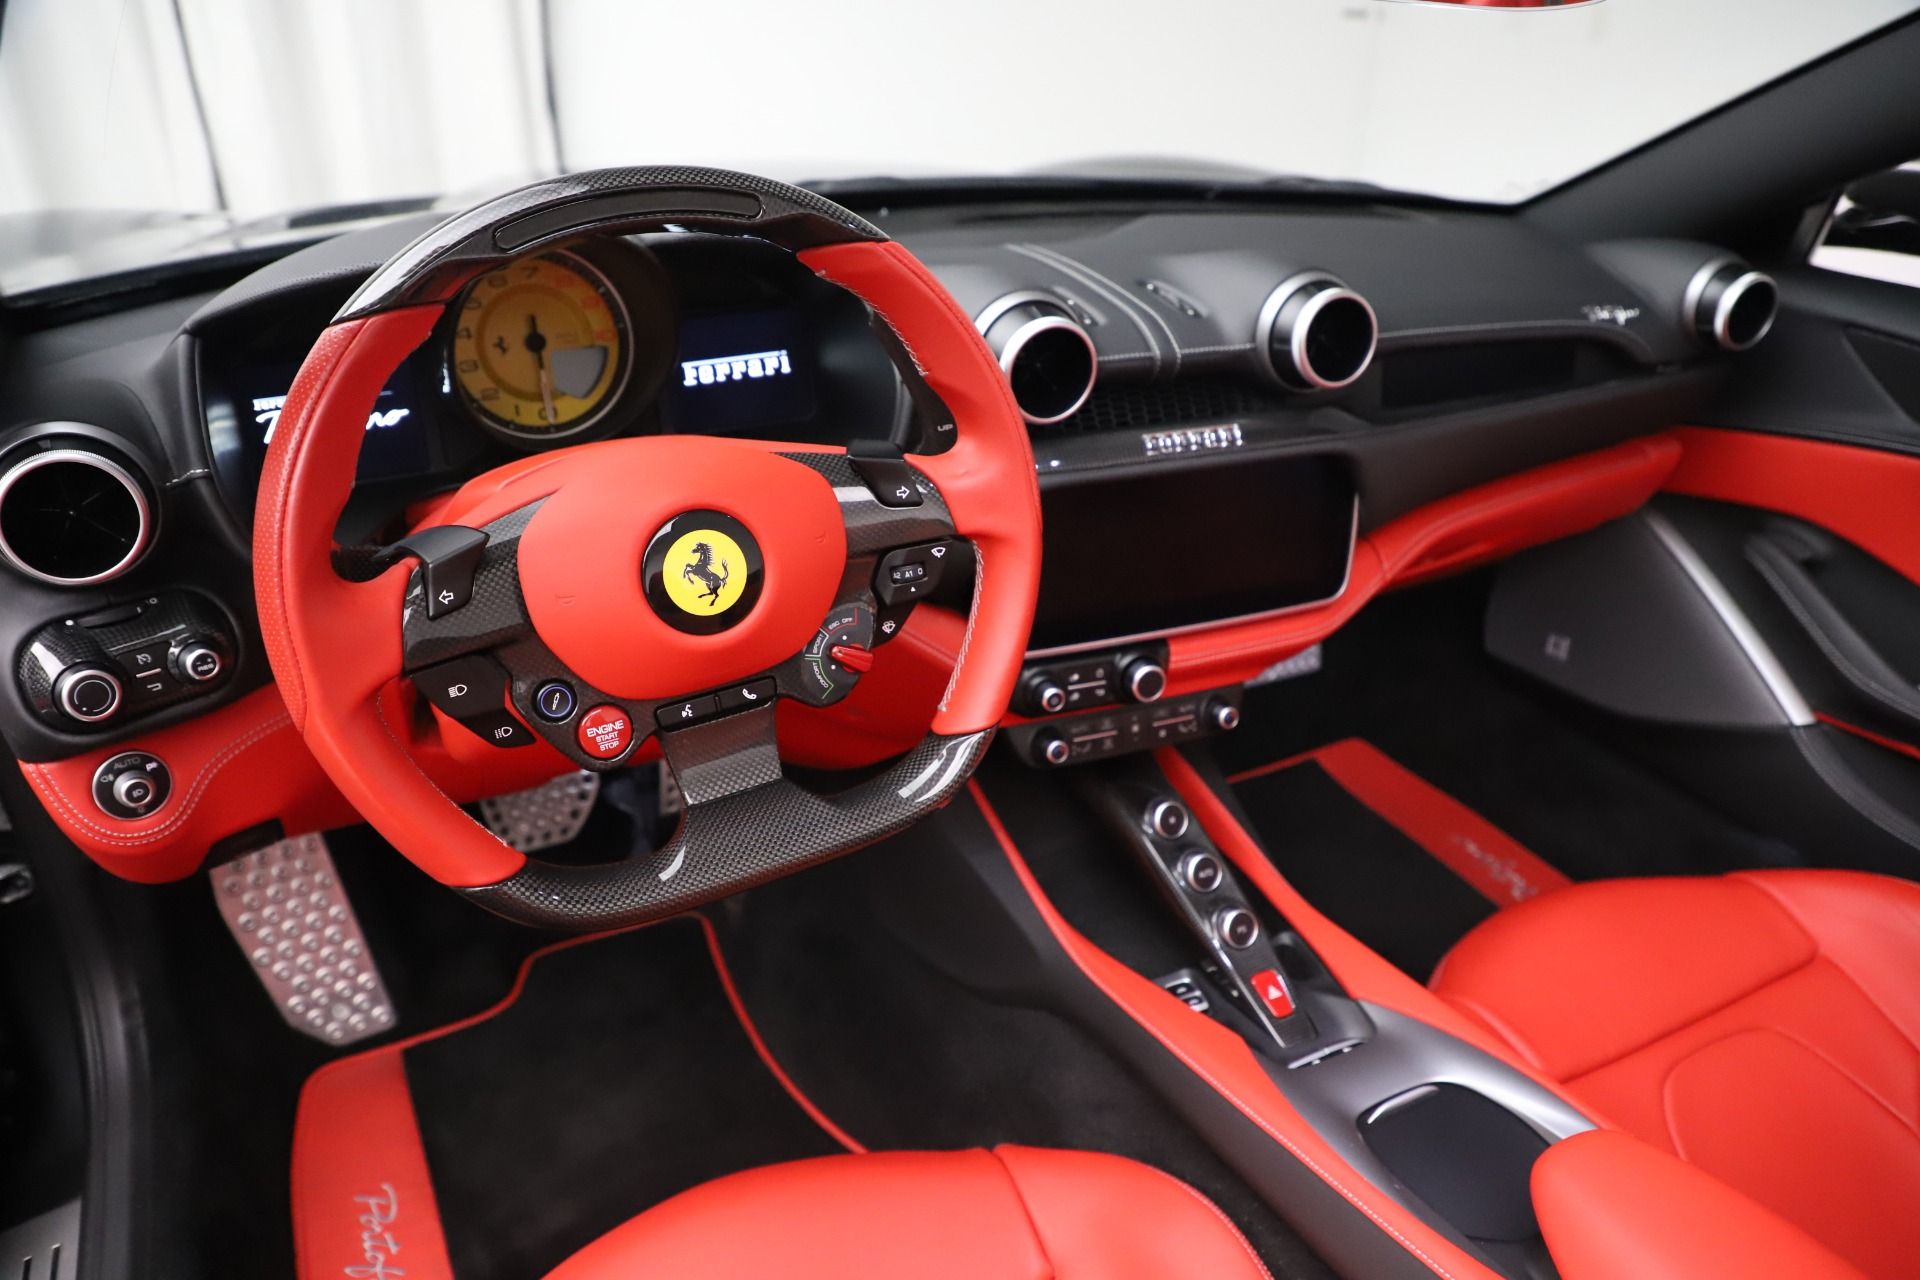 Interior view of the Ferrari Portofino